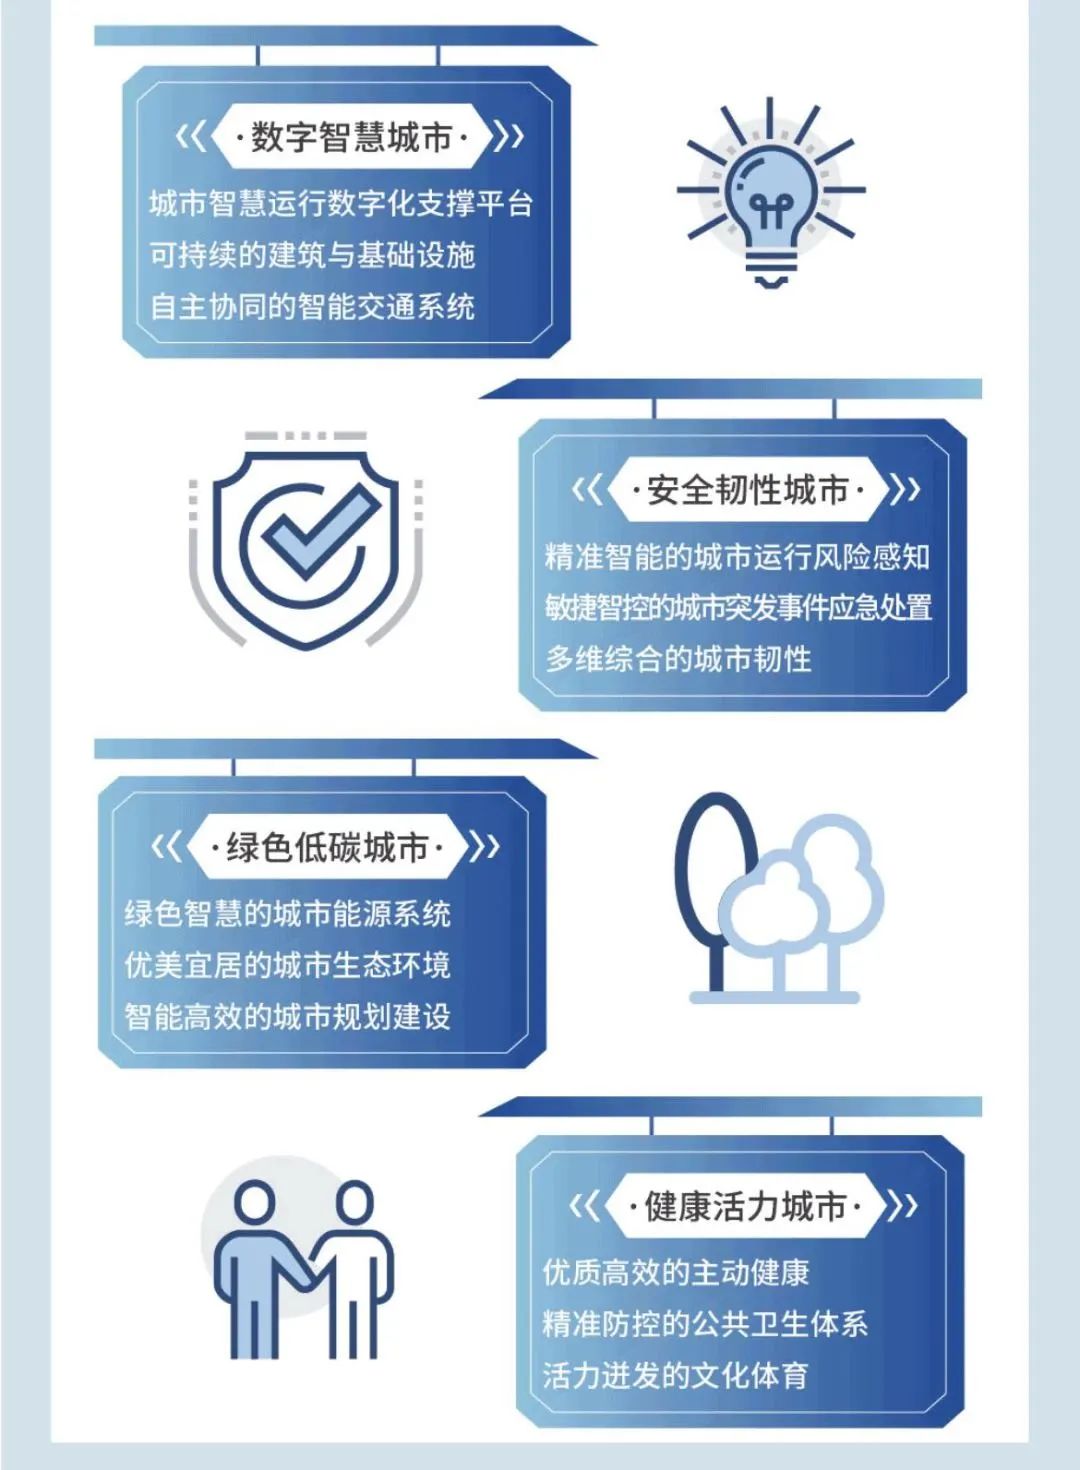 肇庆市全力支持5G网络建设，深远影响城区发展与民生福祉  第1张